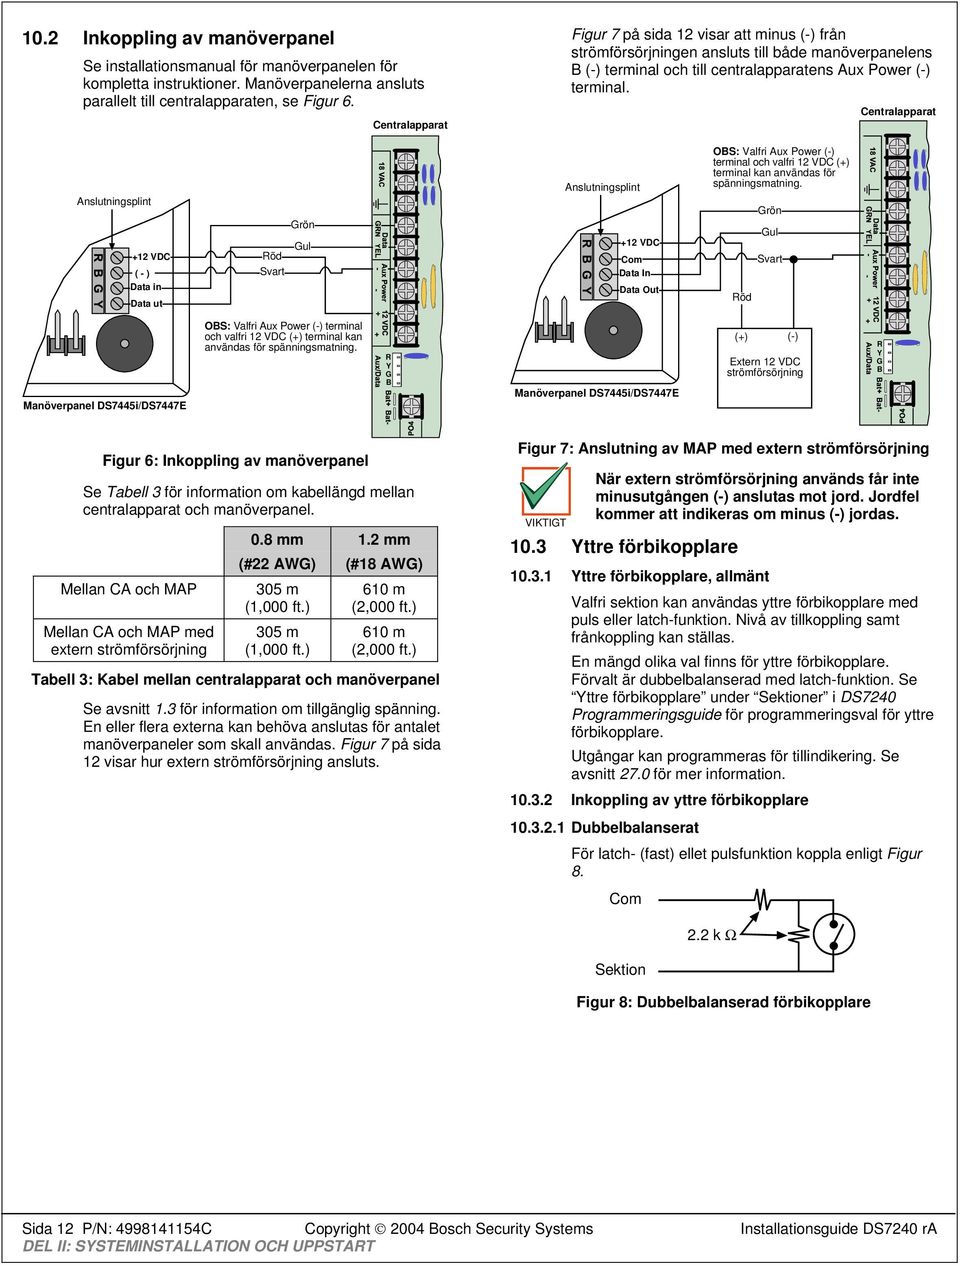 Centralapparat Anslutningsplint OBS: Valfri Aux Power (-) terminal och valfri 12 VDC (+) terminal kan användas för spänningsmatning.